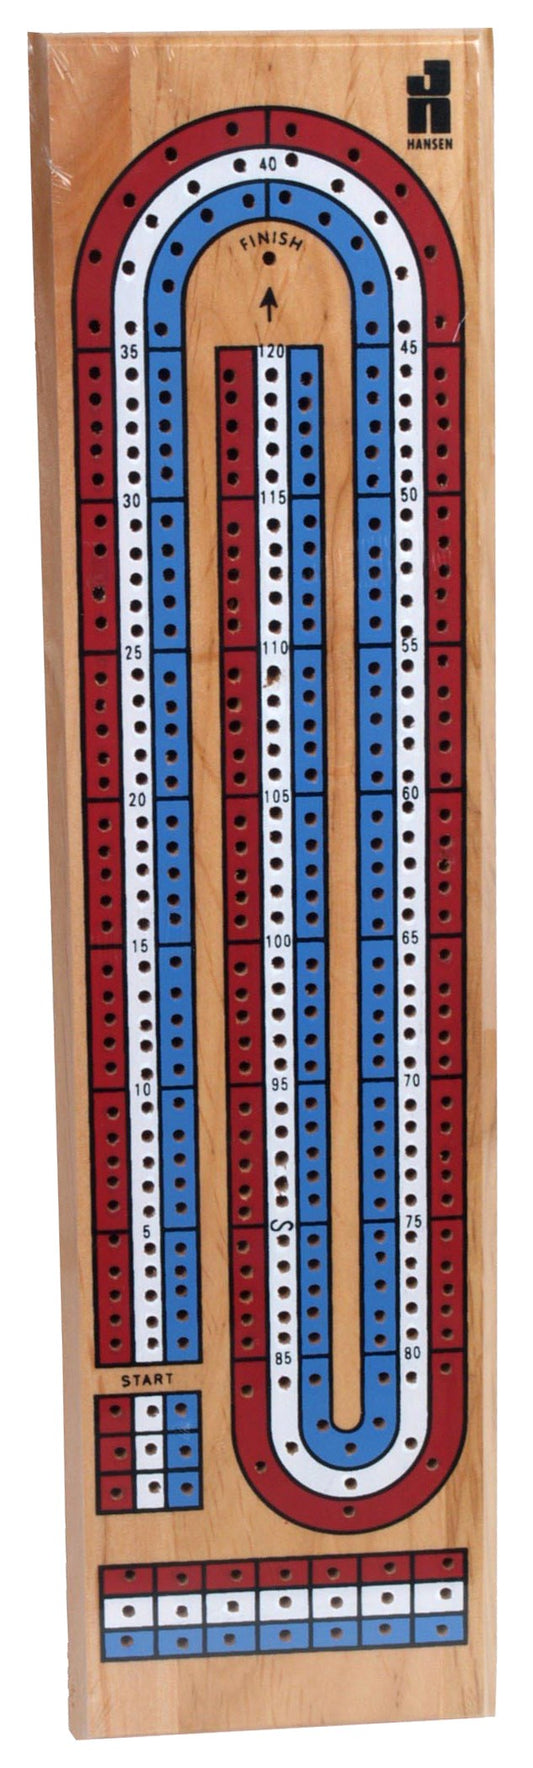 Hansen Tr-99 3 Track Color Cribbage Board